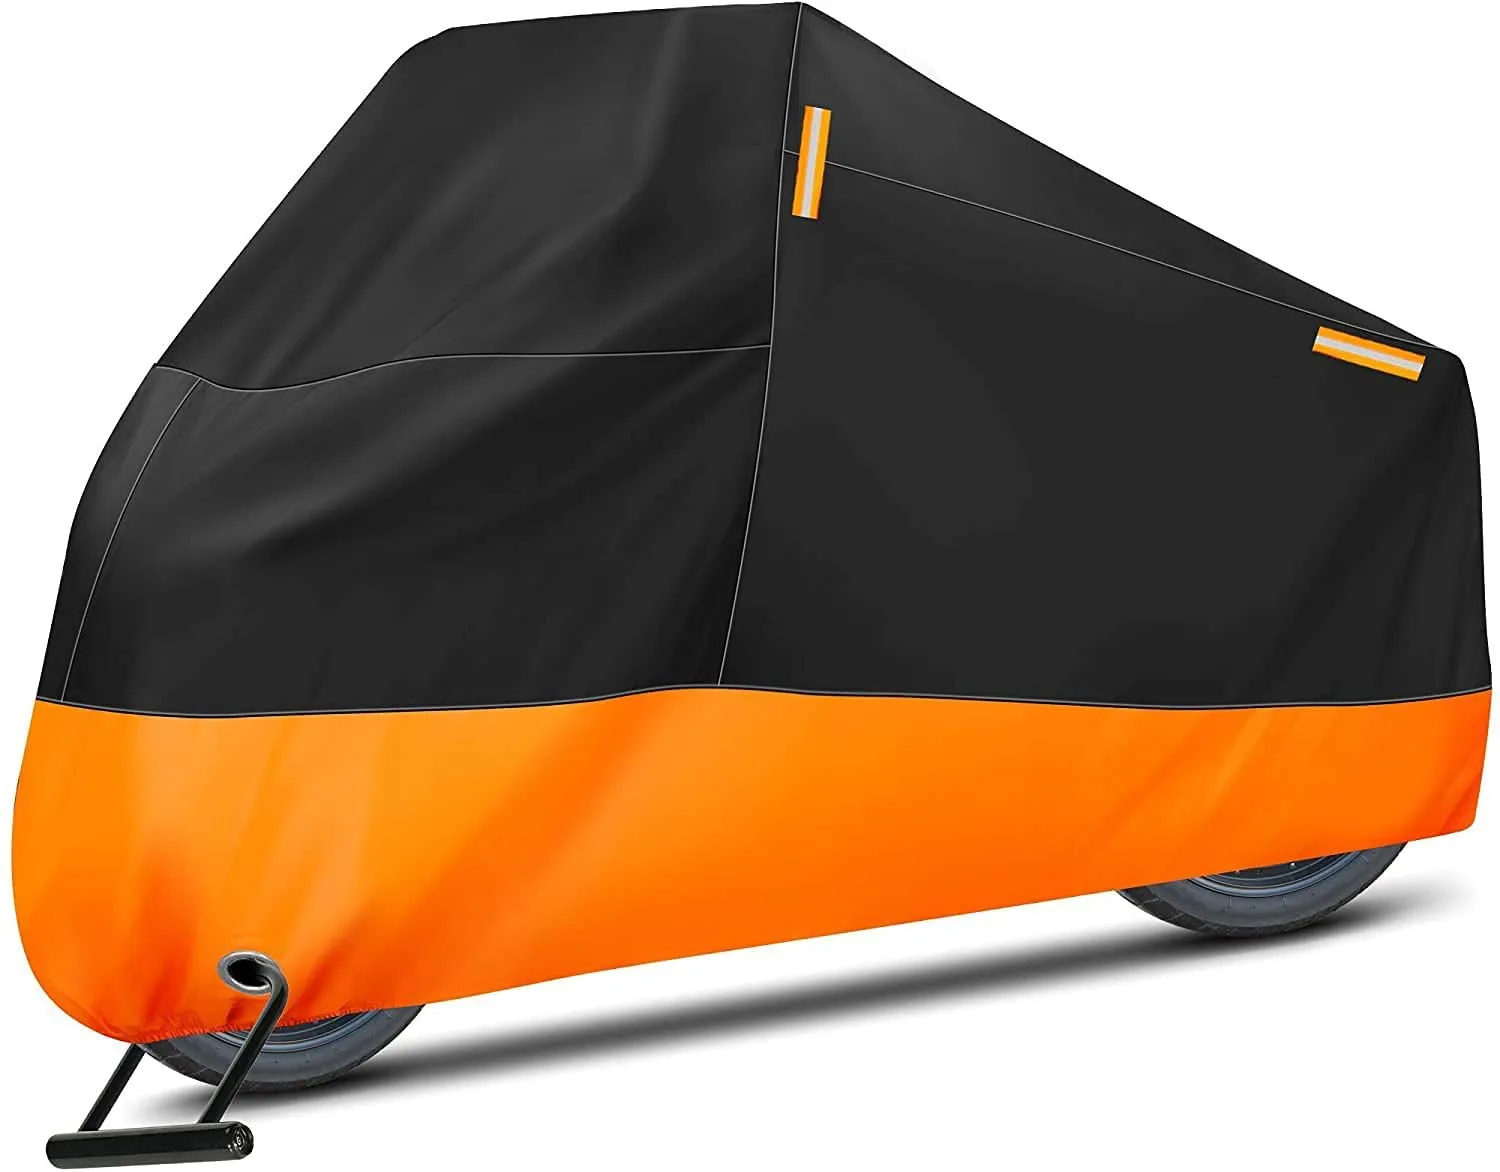 

Чехол для мотоцикла, большой общий водонепроницаемый чехол для внутреннего скутера, с 4 отражающими полосками (черный и оранжевый)